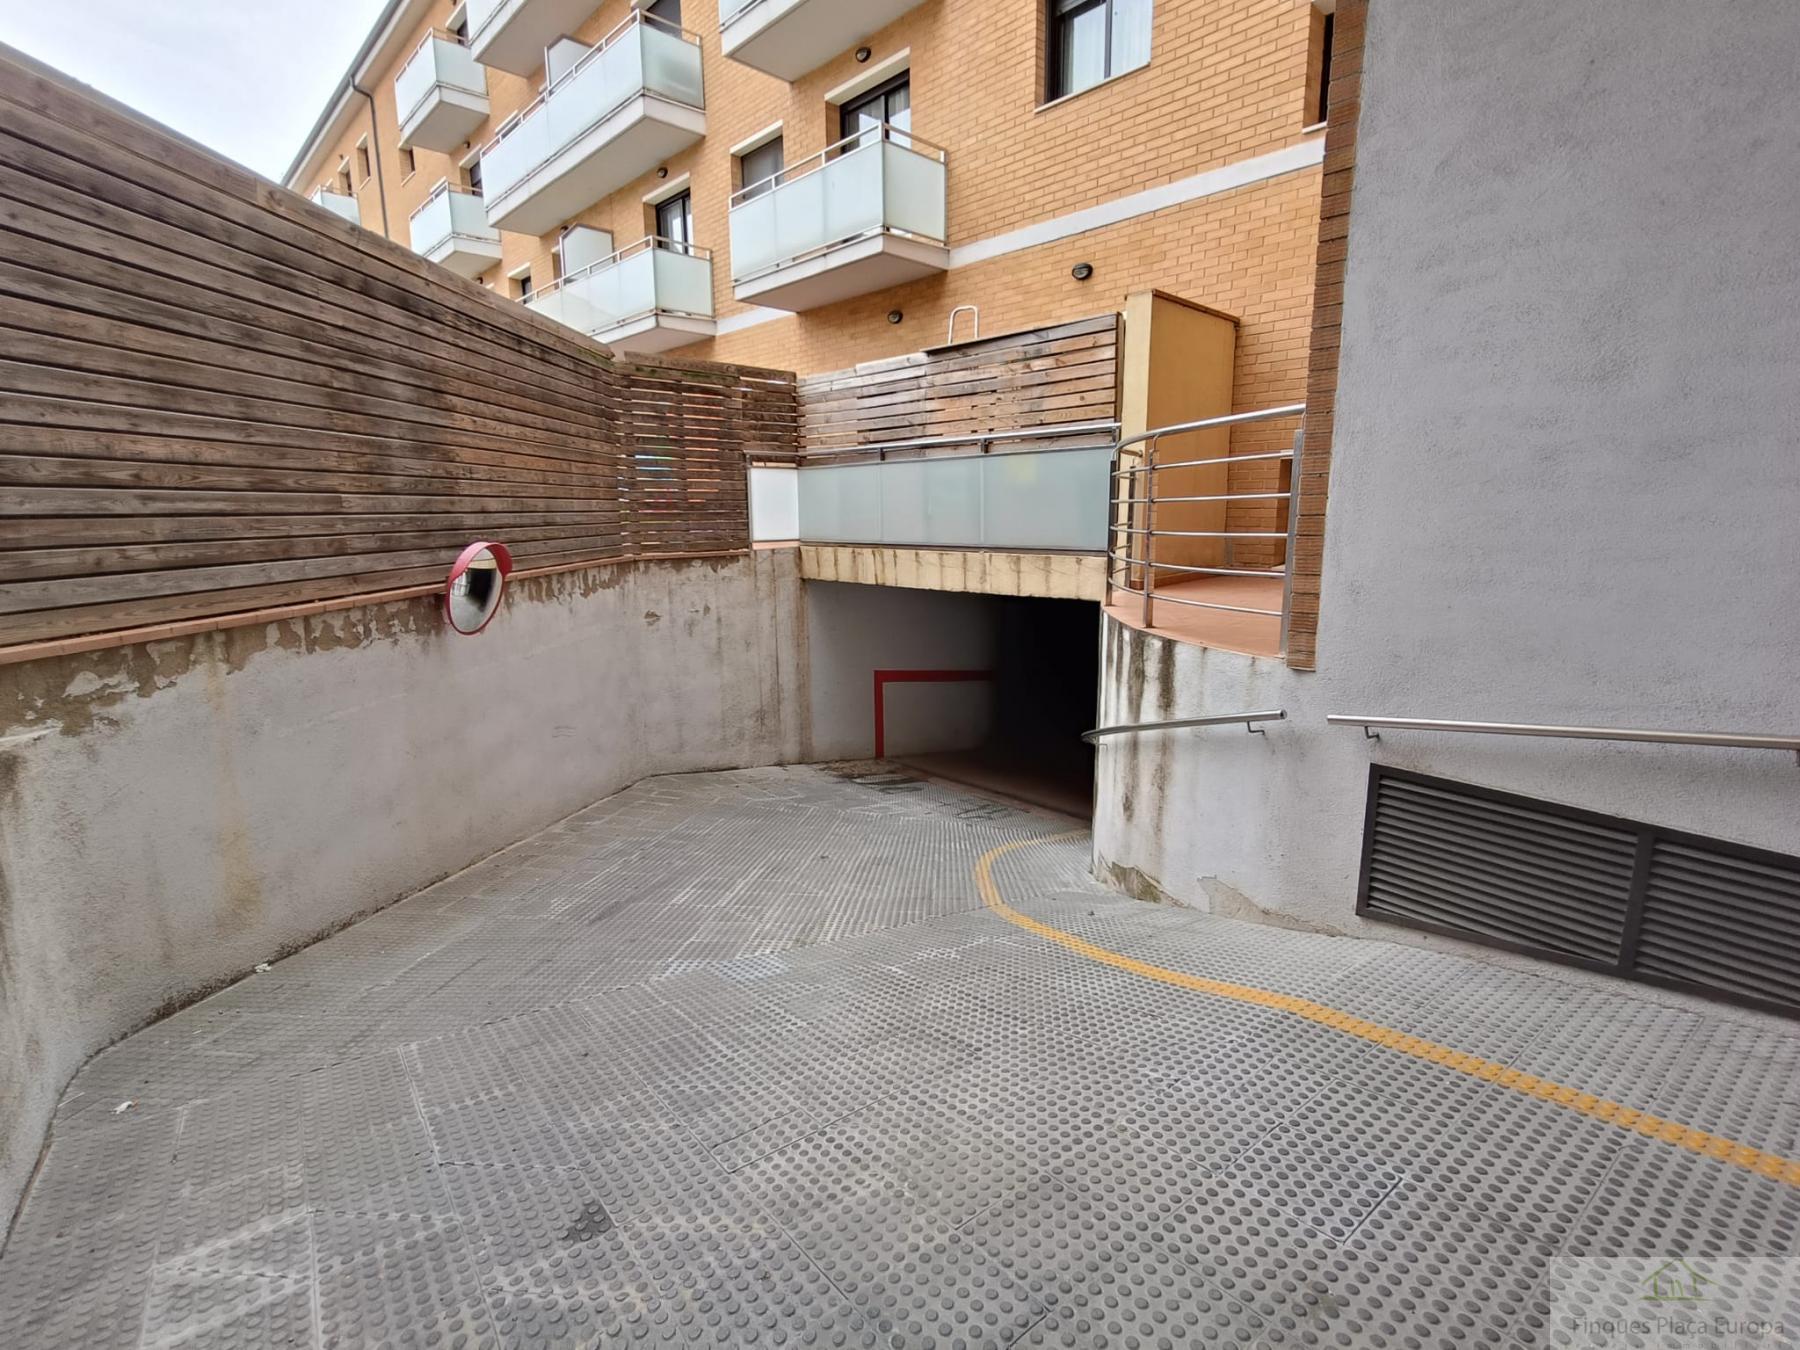 For sale of garage in Santa Cristina d Aro